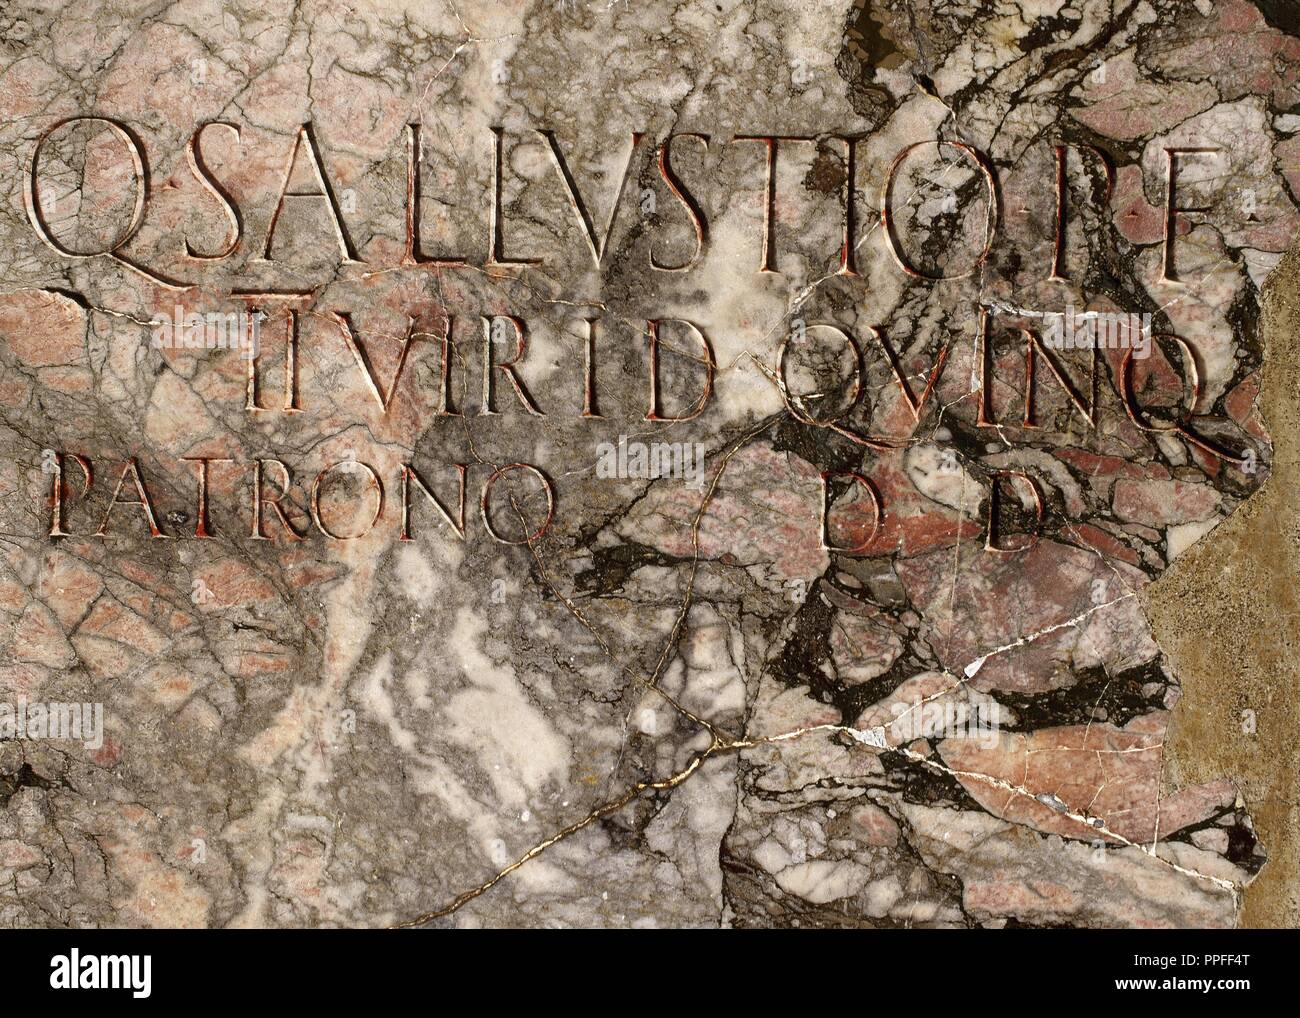 Italy. The Campania, Pompeii. Inscription in roman square capitals. Stock Photo